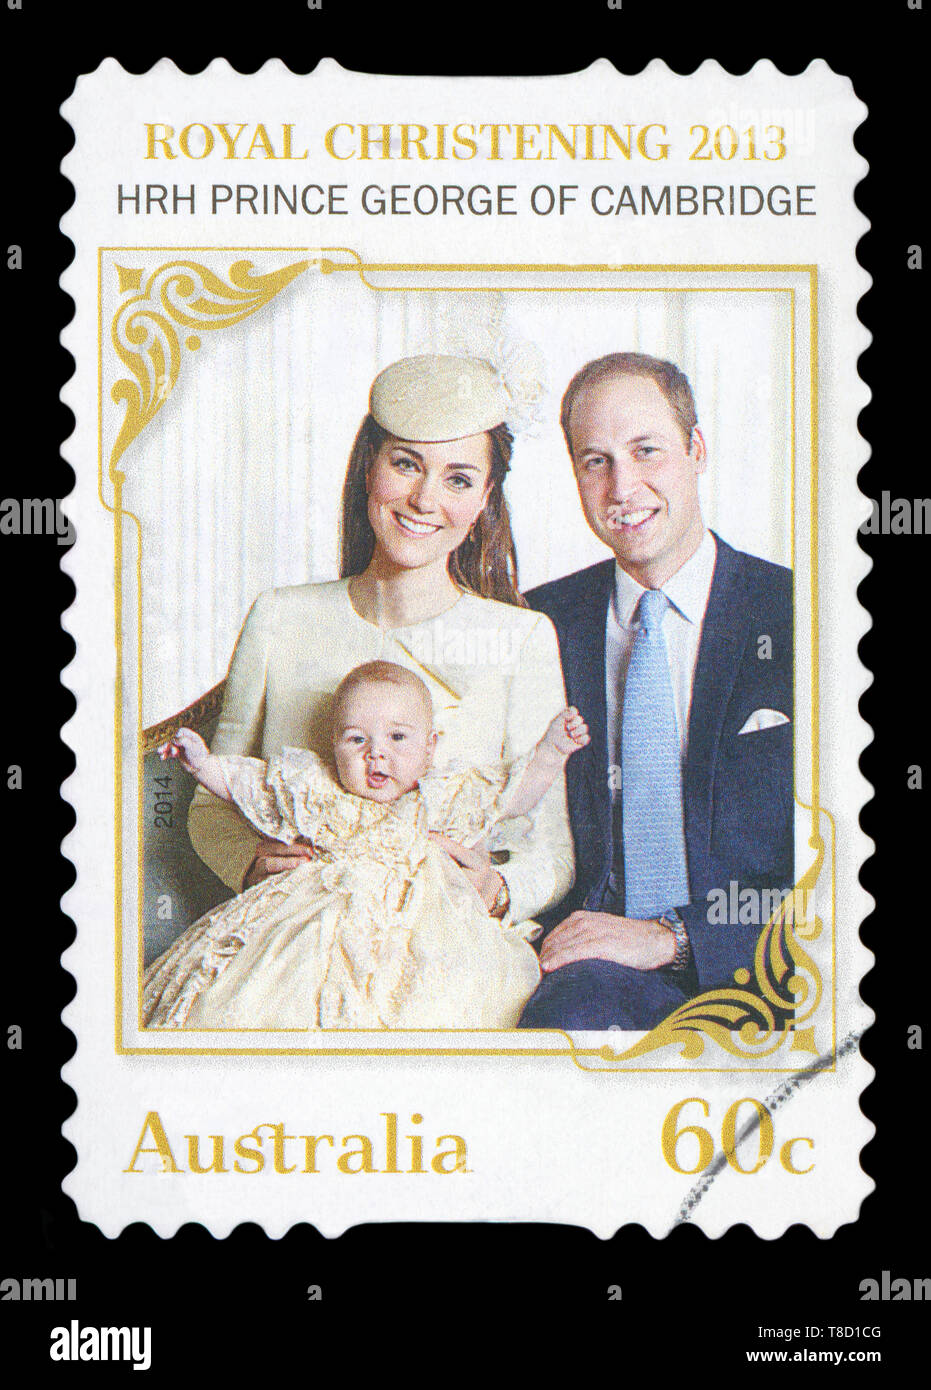 AUSTRALIA - circa 2013: un usato francobollo da Australia, celebra il battesimo di S.A.R. il principe George di Cambridge, pictred con i suoi genitori W Foto Stock